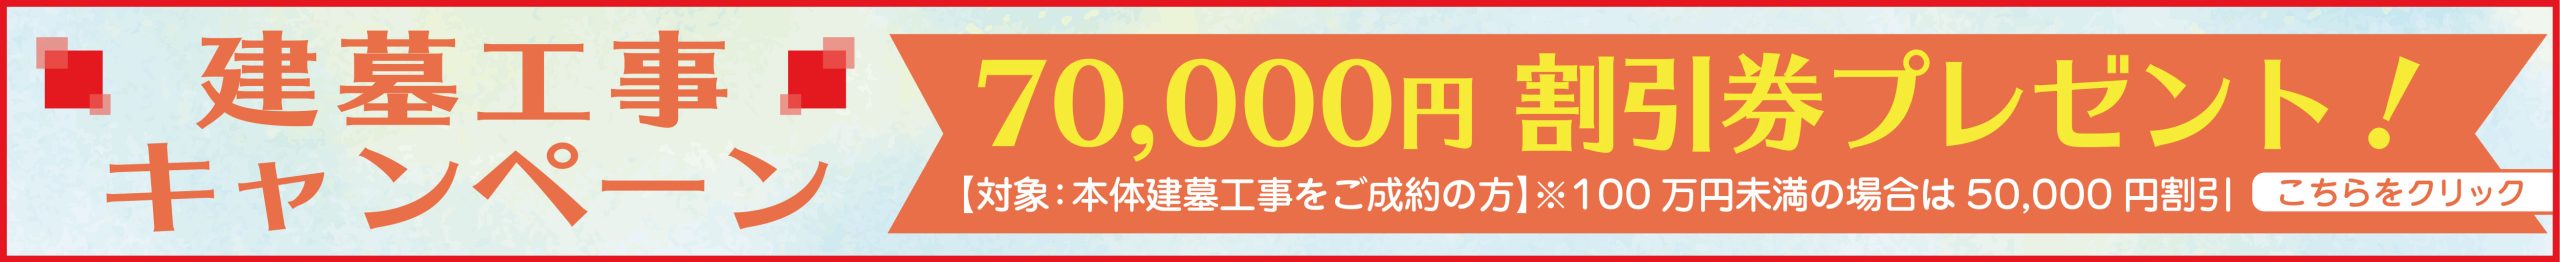 建墓工事キャンペーン 70,000円割引券プレゼント！